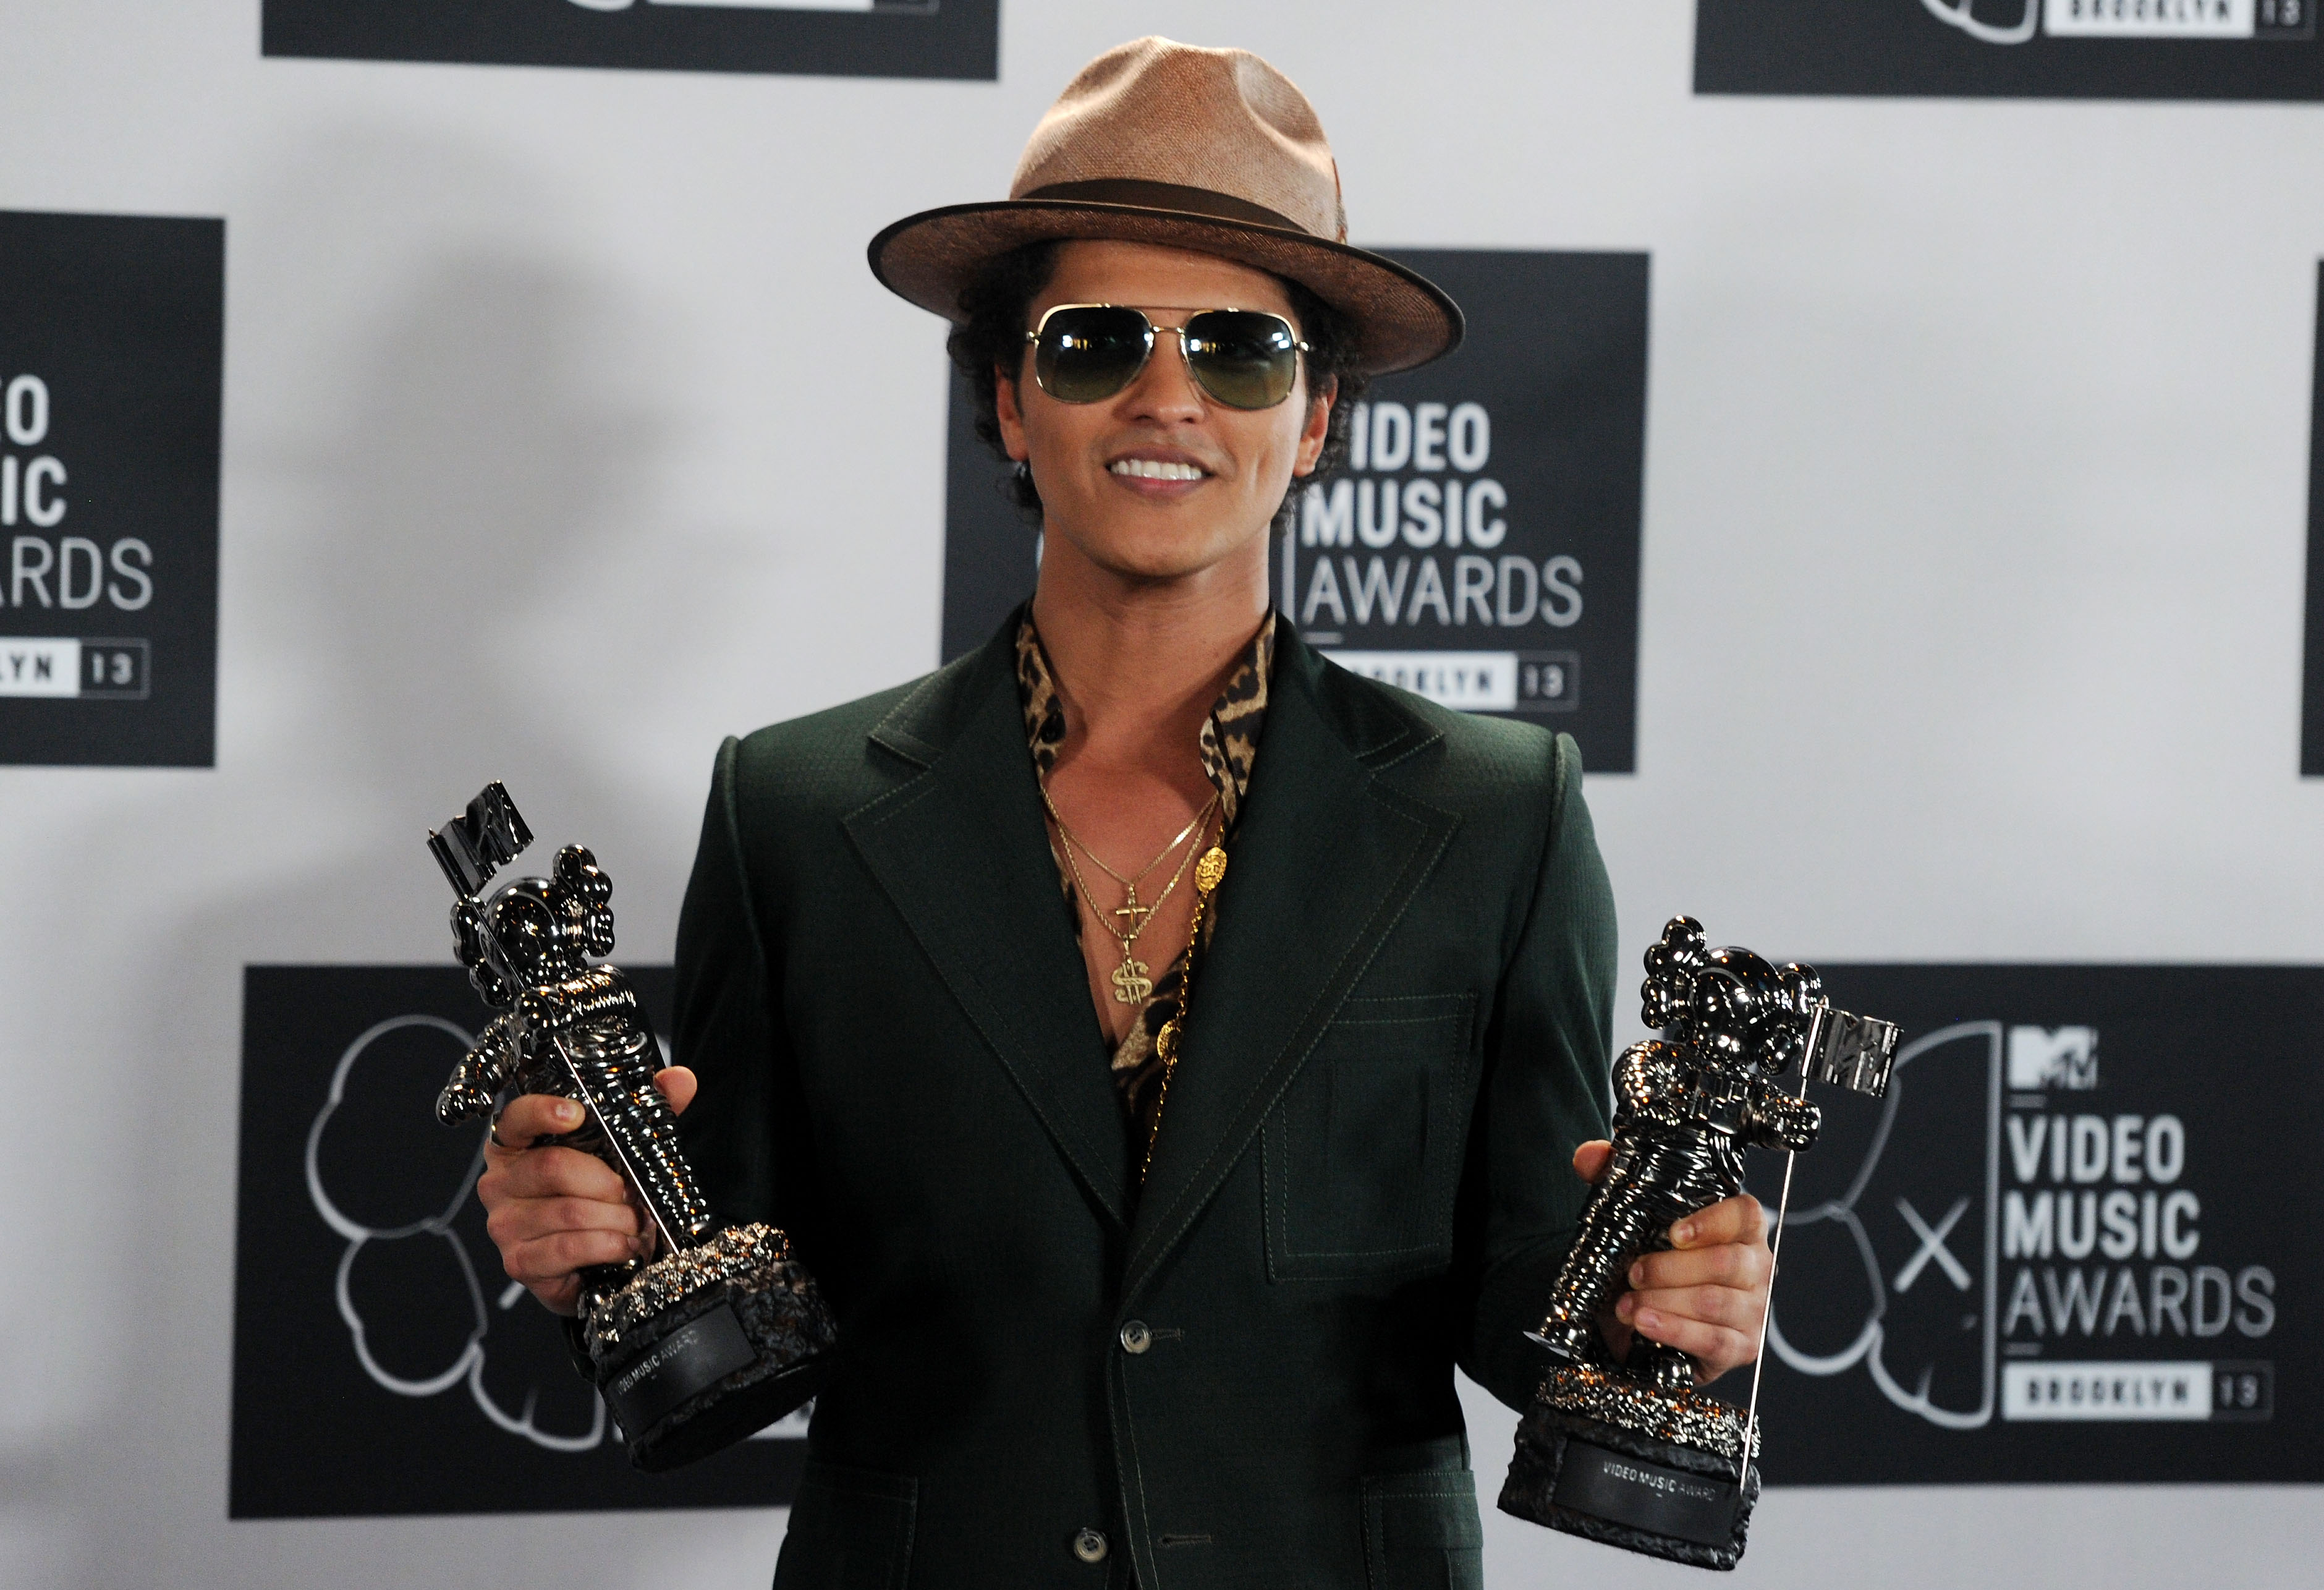 Bruno Mars 2013 MTV Video Music Awards